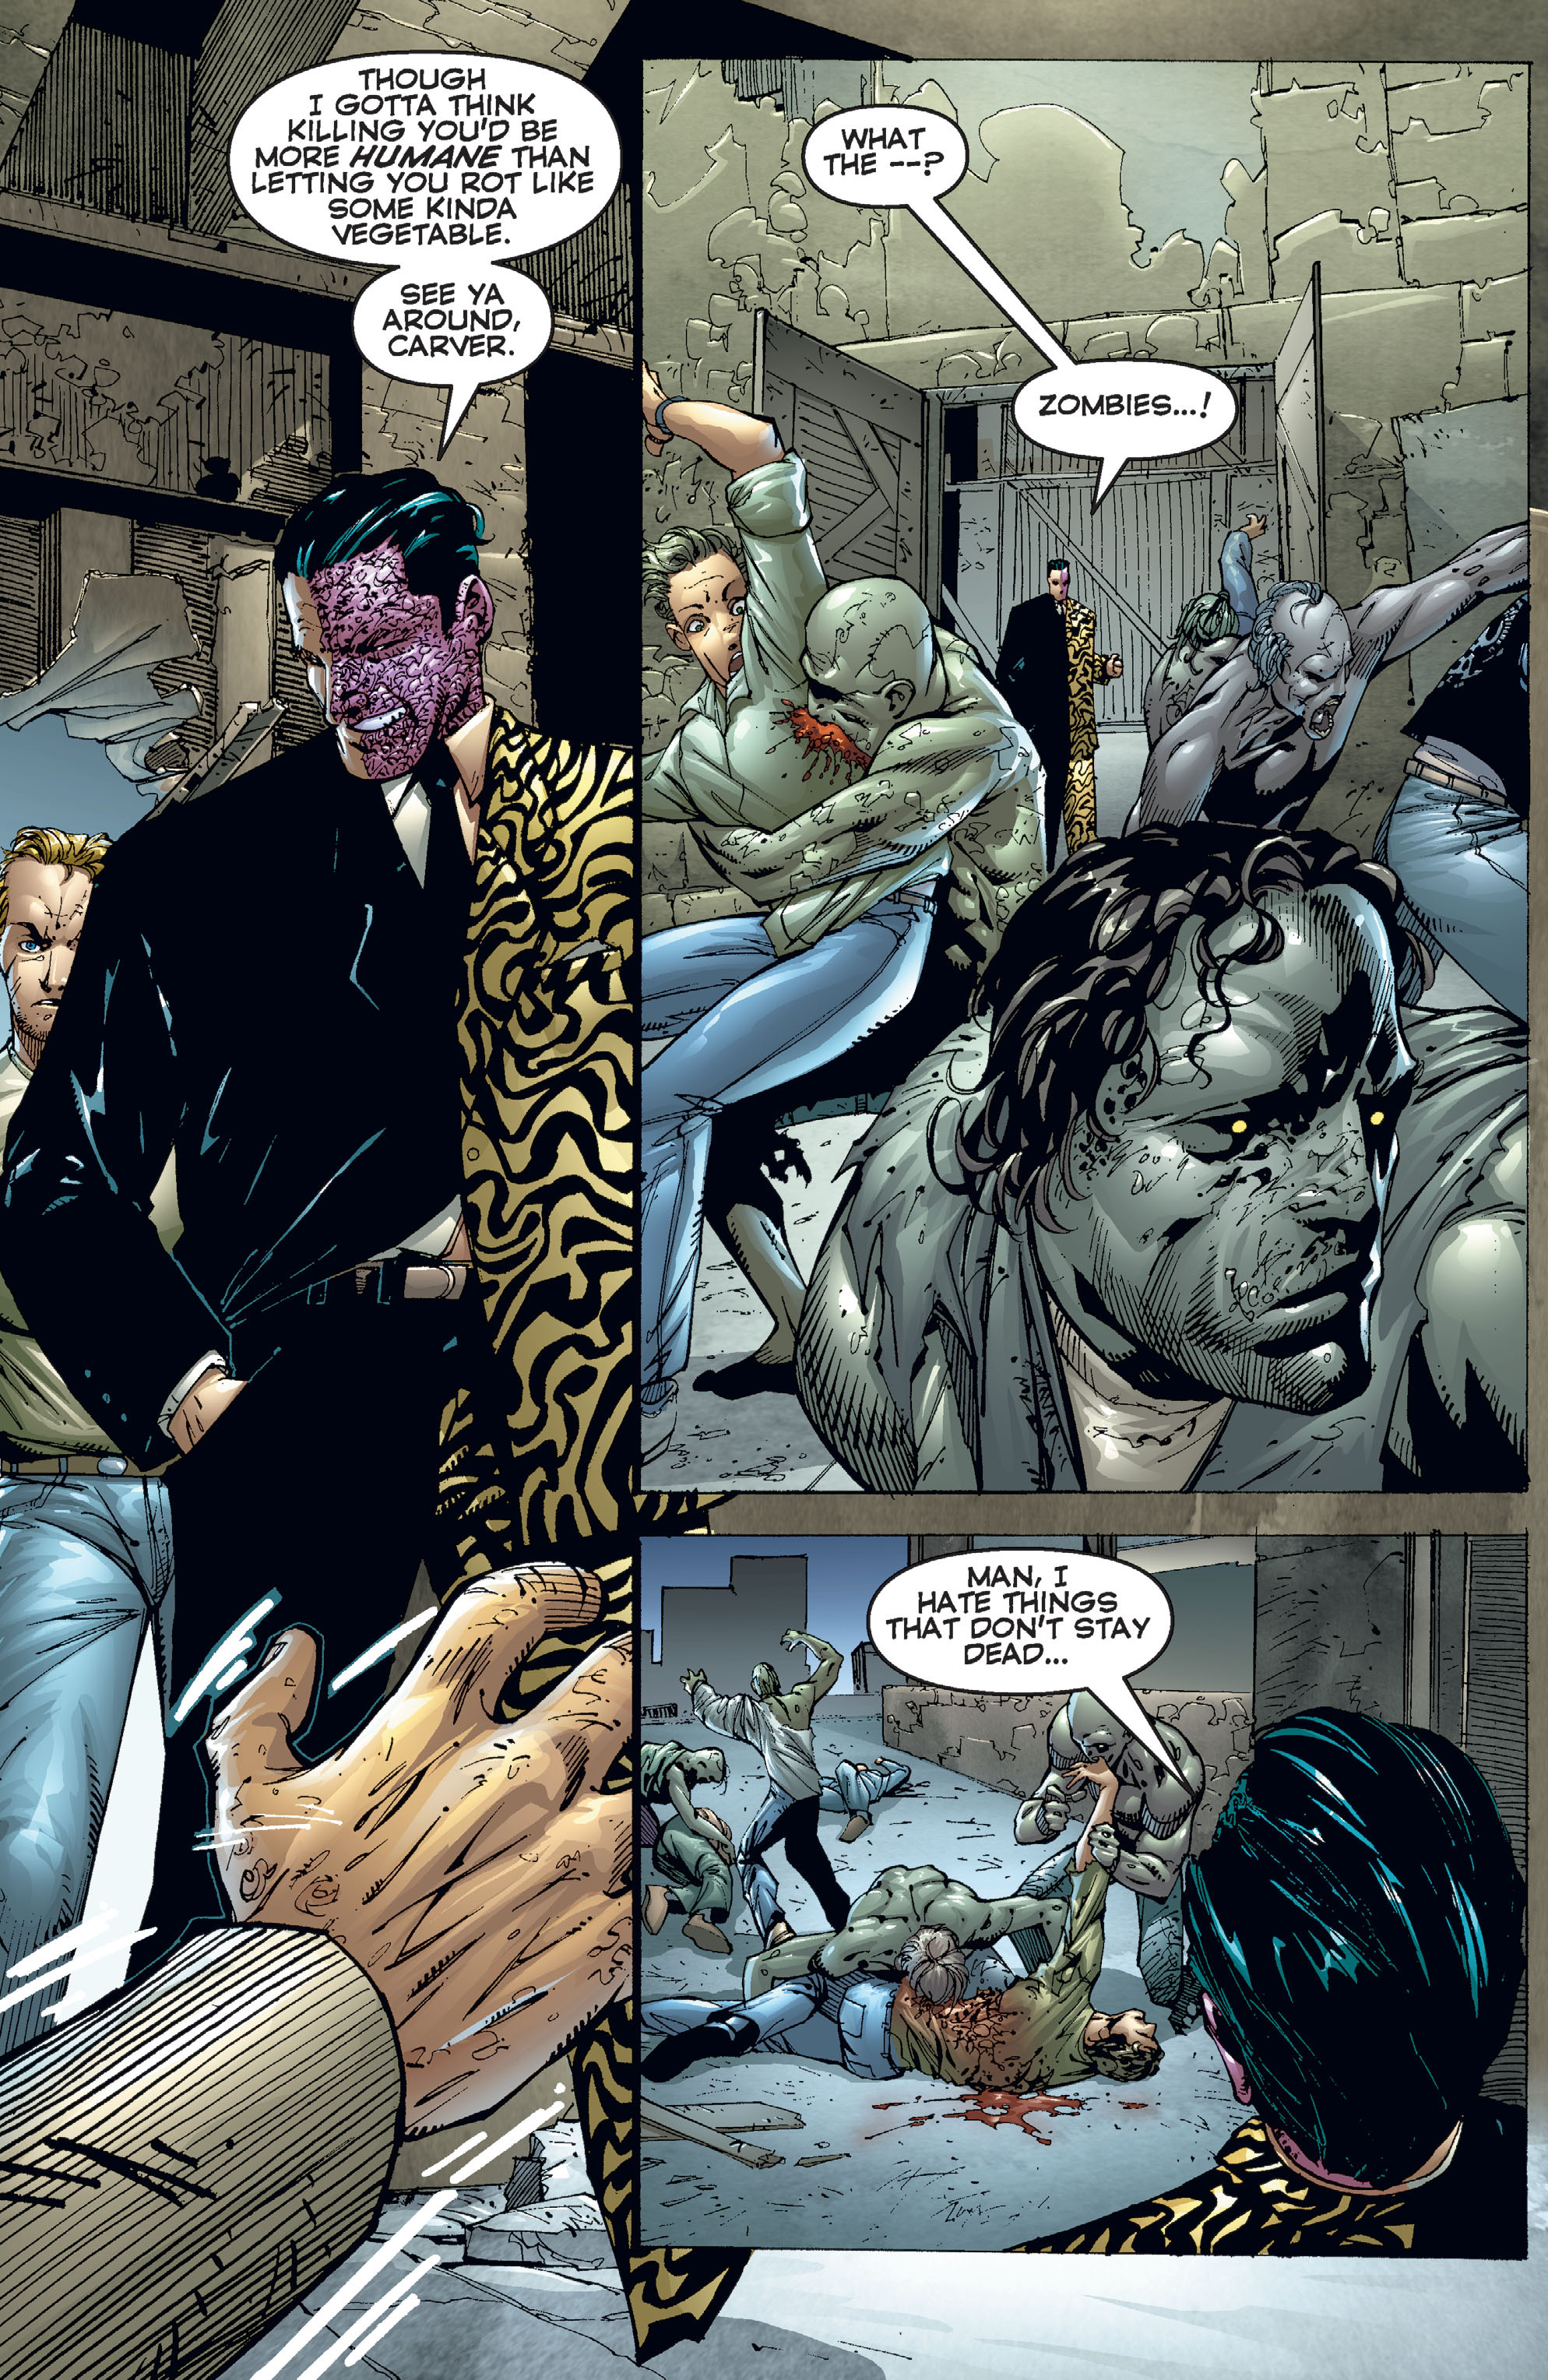 DC Comics/Dark Horse Comics: Justice League Full #1 - English 391